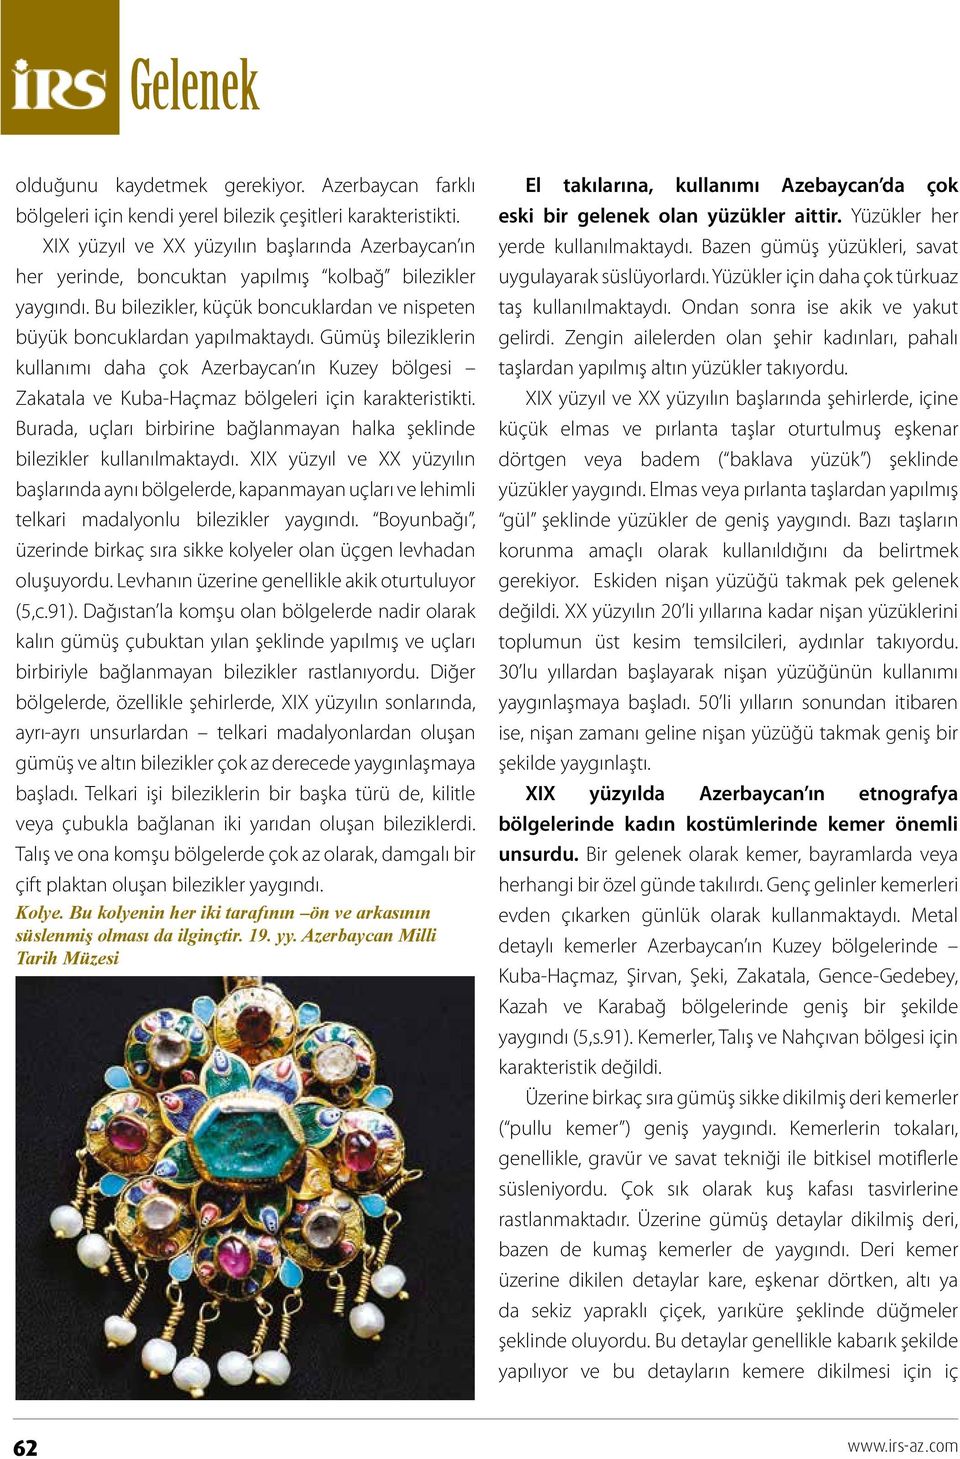 Gümüş bileziklerin kullanımı daha çok Azerbaycan ın Kuzey bölgesi Zakatala ve Kuba-Haçmaz bölgeleri için karakteristikti.